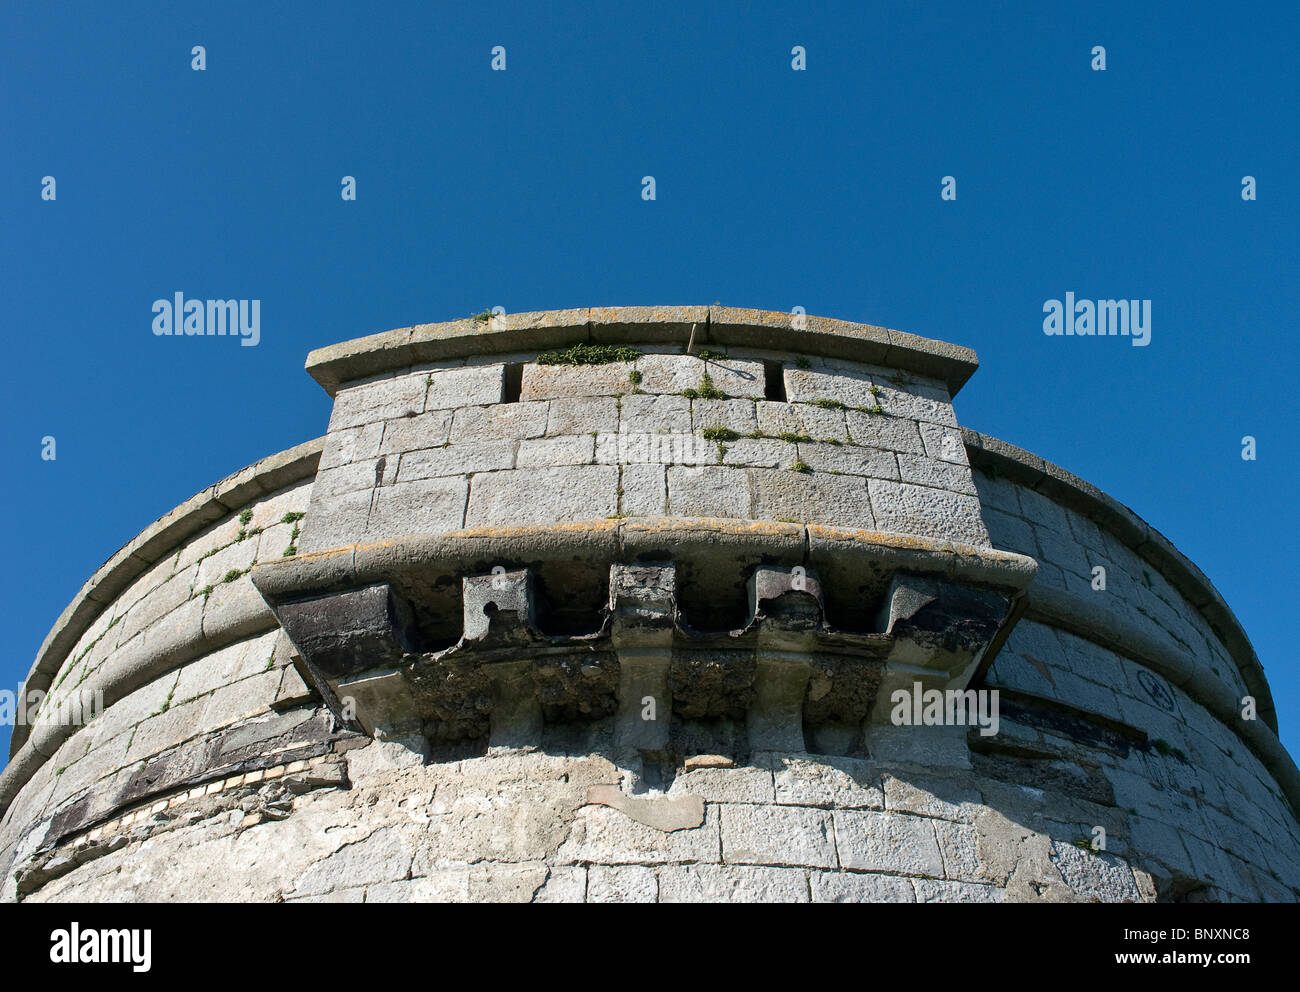 Il periodo napoleonico Martello torre difensiva sull Isola Rossa in corrispondenza della località balneare di Skerries, regione settentrionale della contea di Dublino, Irlanda Foto Stock